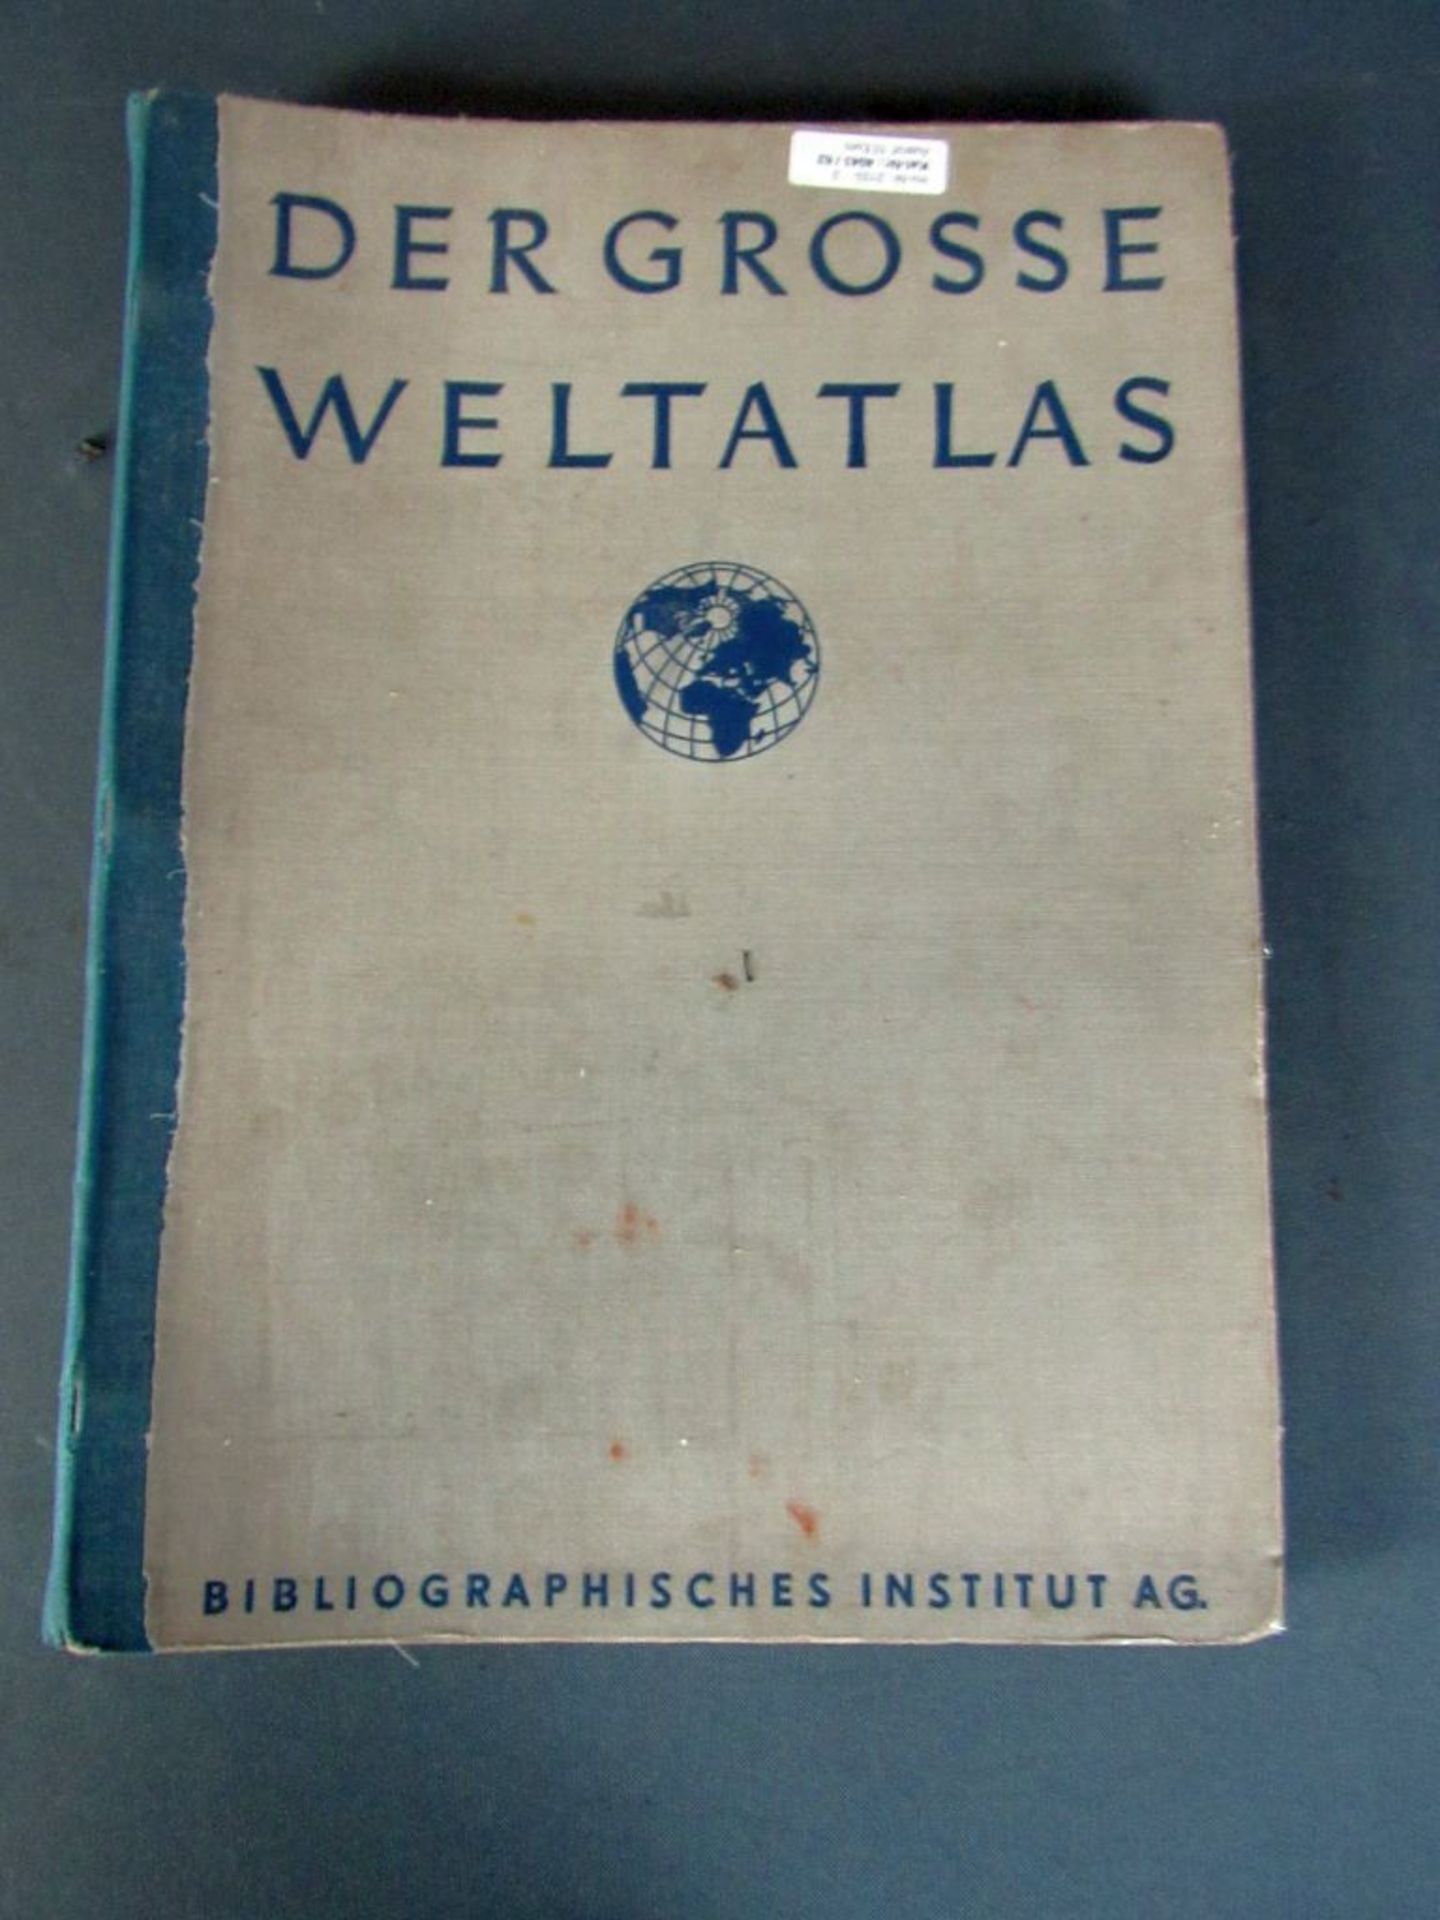 Weltatlas von 1939 - Image 2 of 18